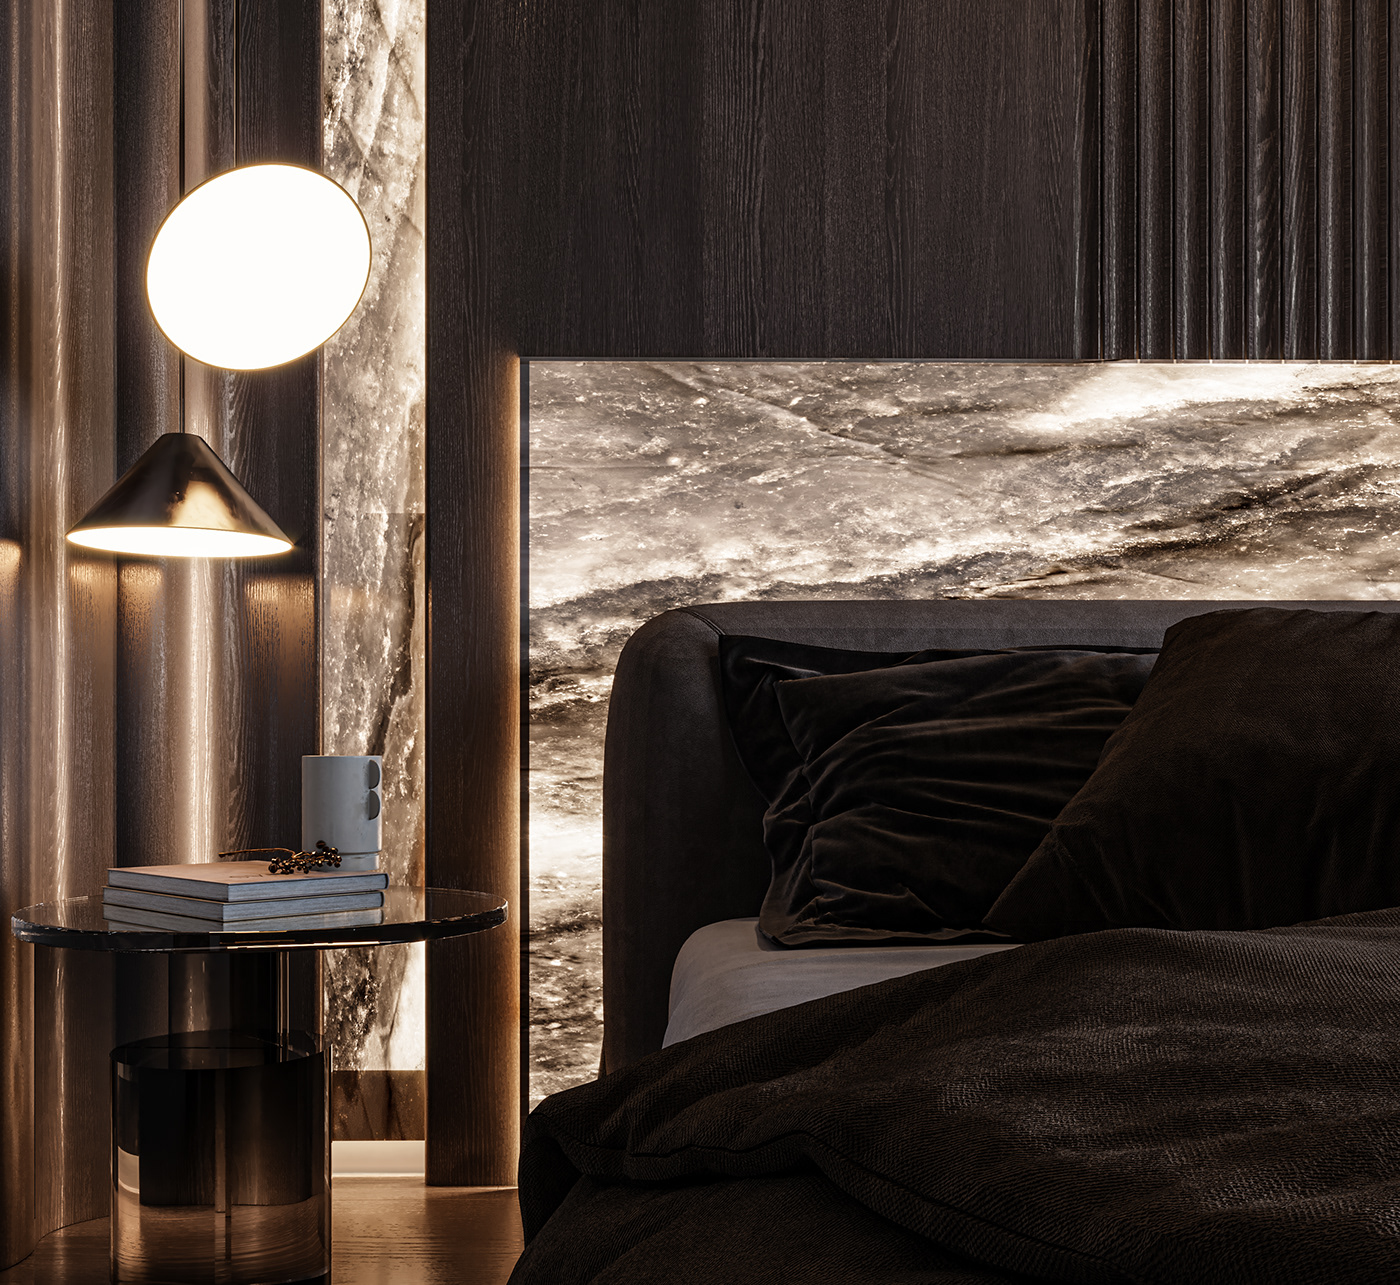 corona 3ds max visualization interior design  architecture Interior home minimal bedroom rendre 